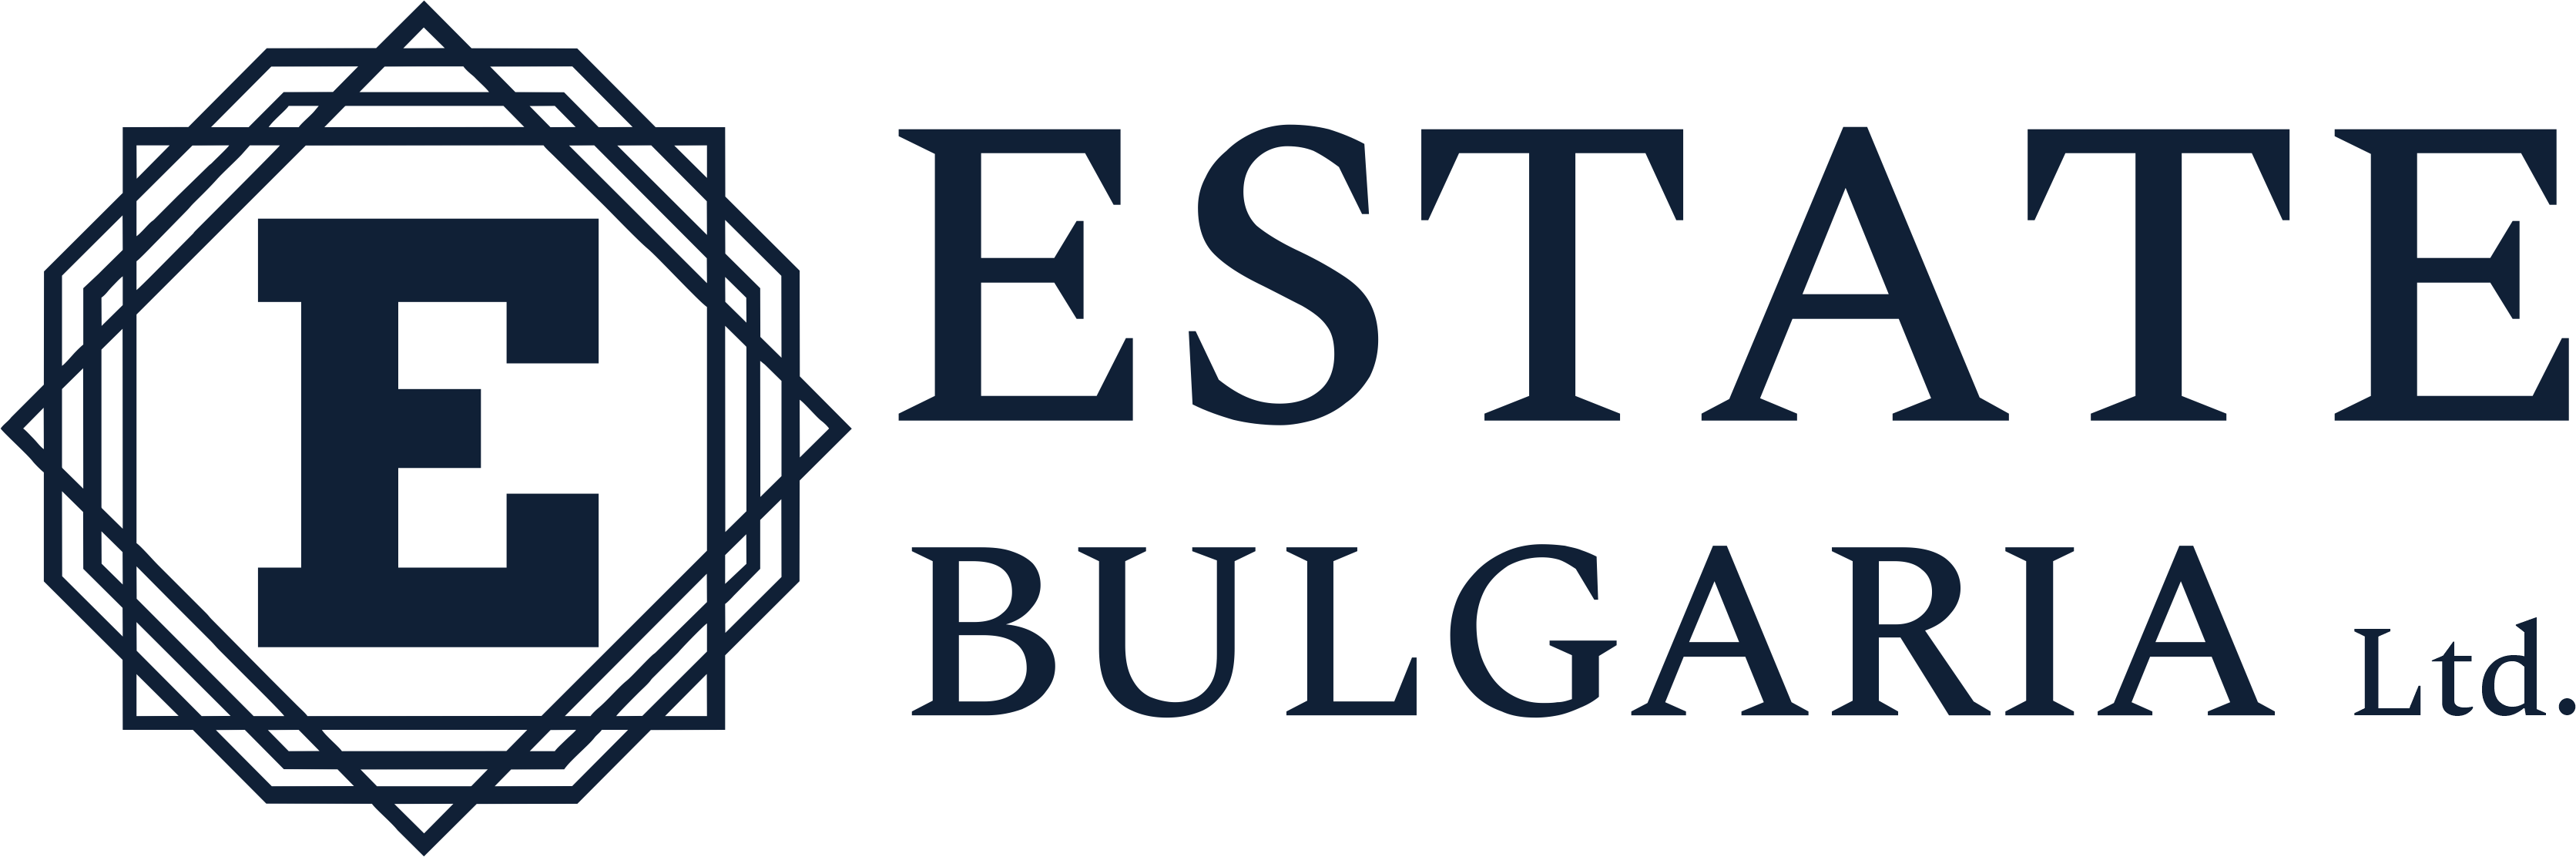 Estate Bulgaria